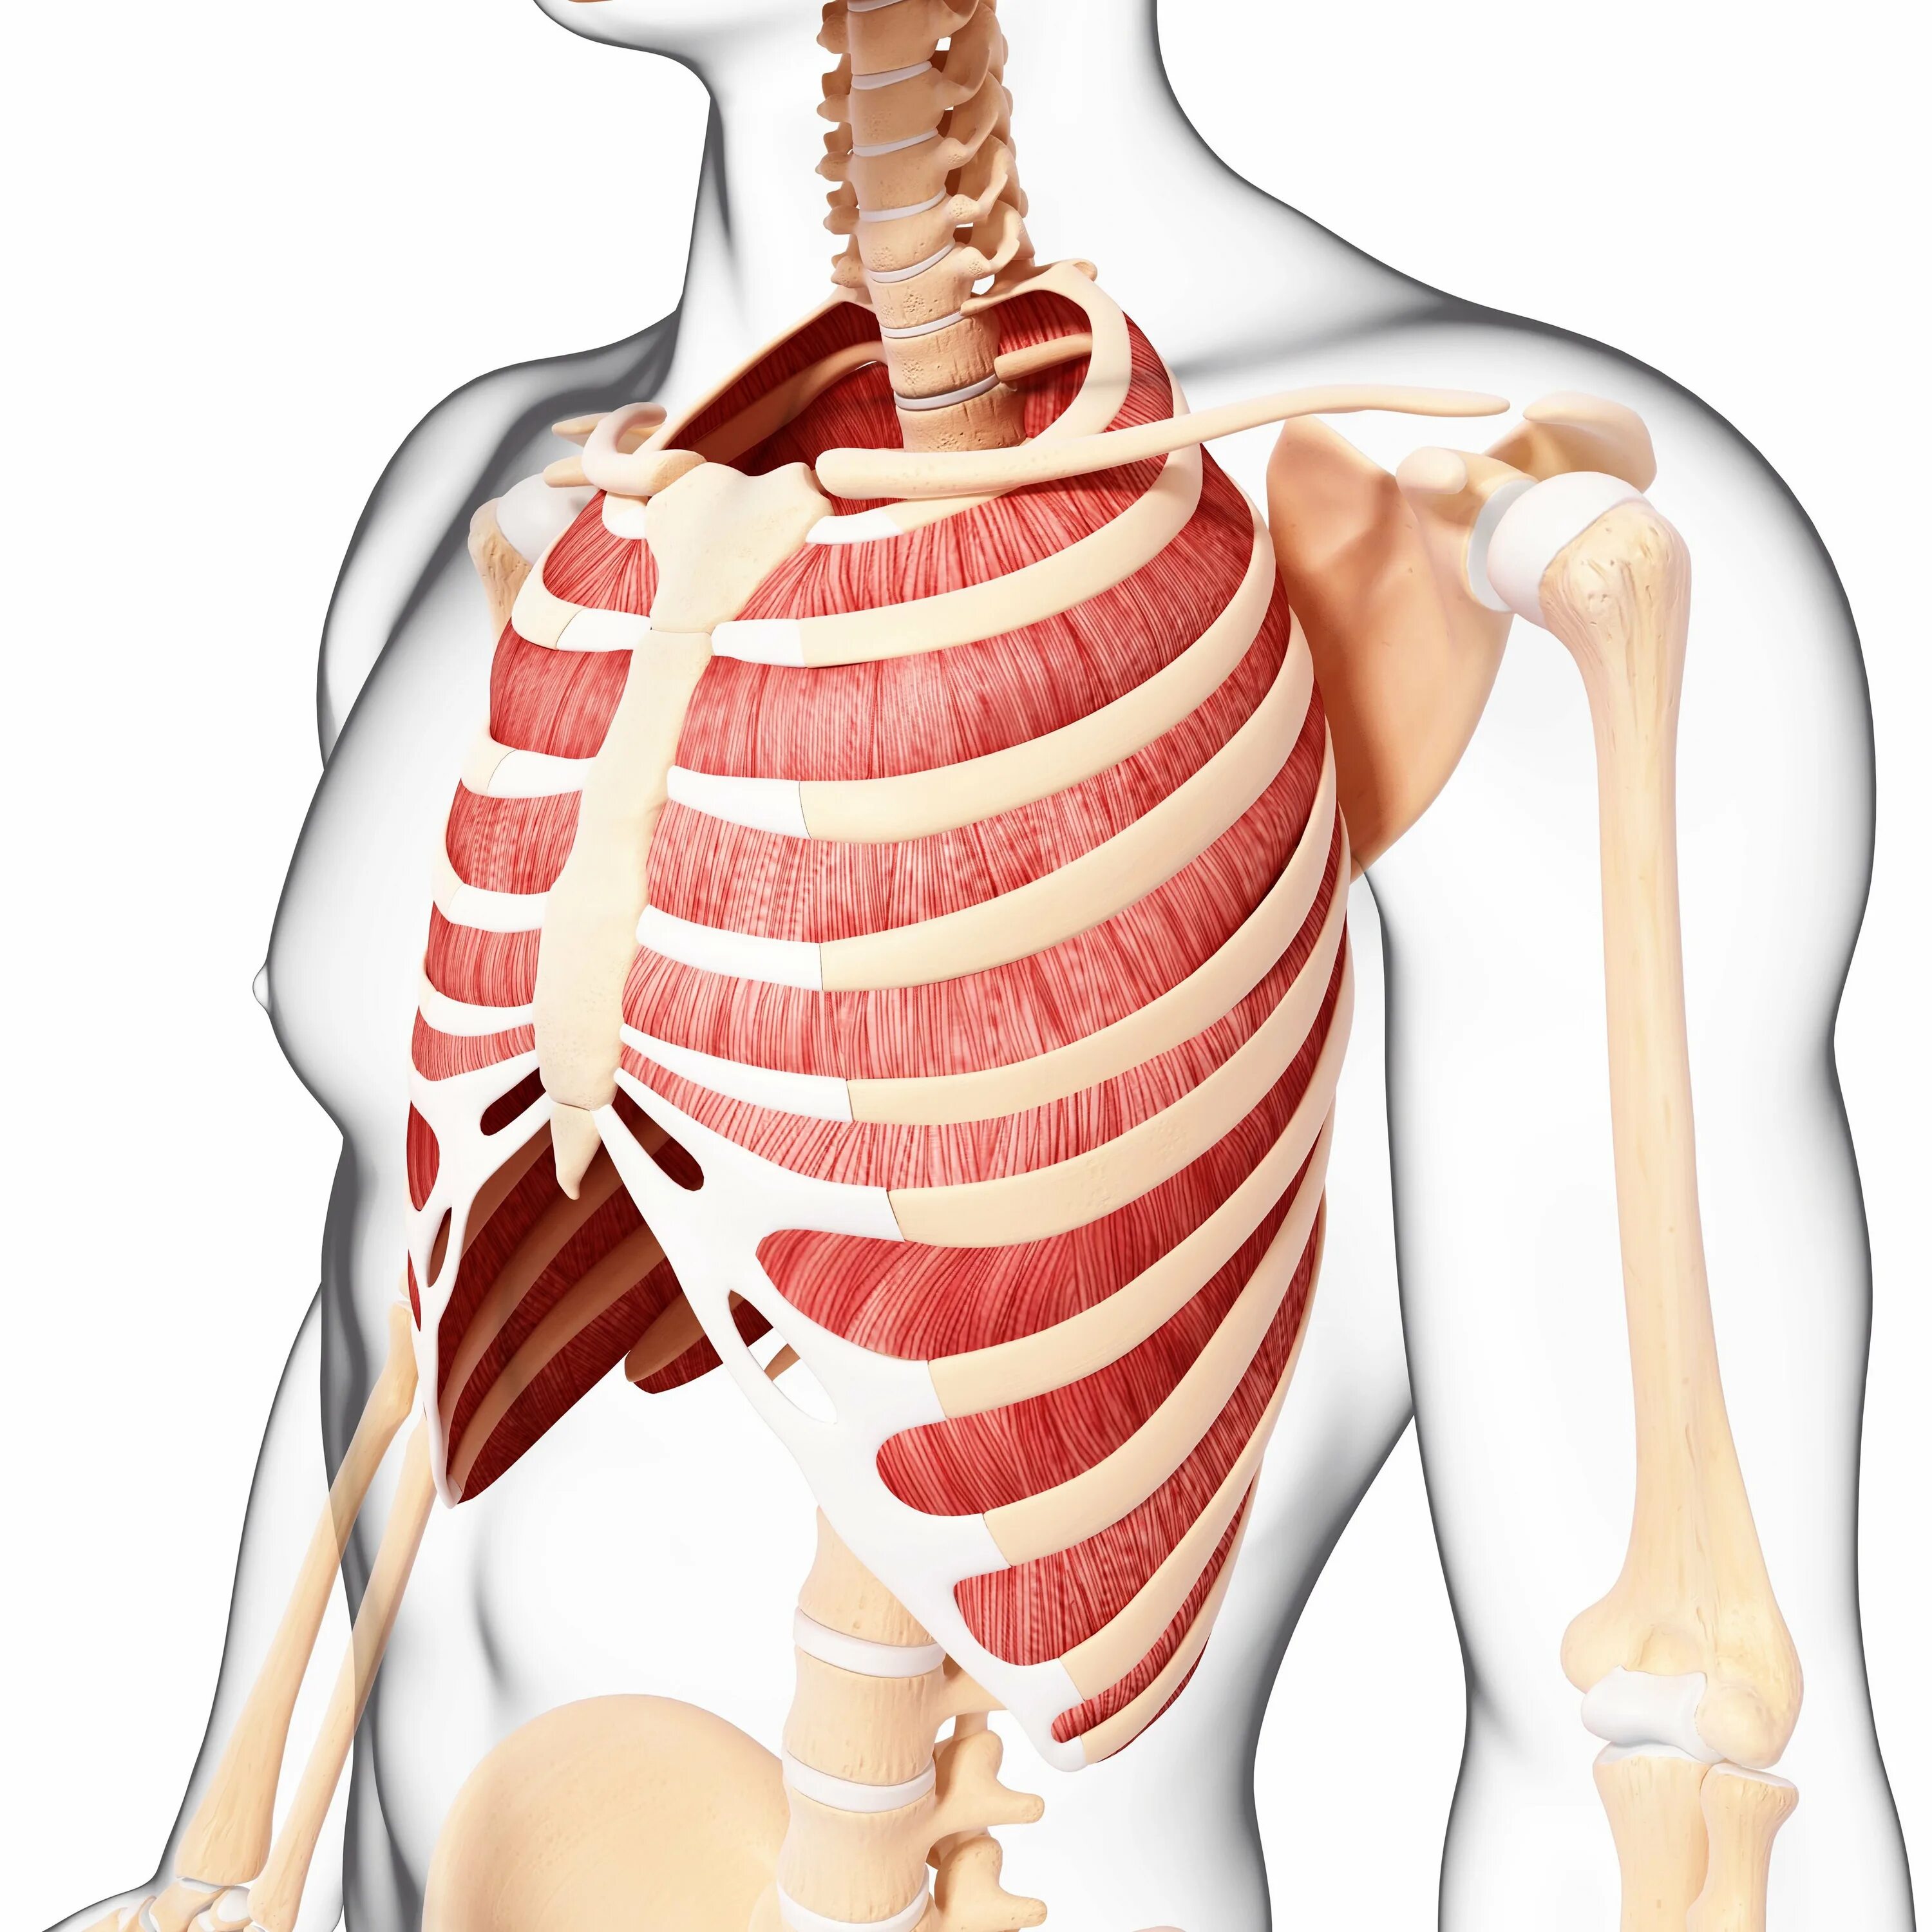 При вдохе болят ребра спереди. Межреберные мышцы анатомия. Наружные межреберные мышцы анатомия. 1) Наружные межреберные мышцы. Mm. Intercostales interni, внутренние межреберные мышцы.